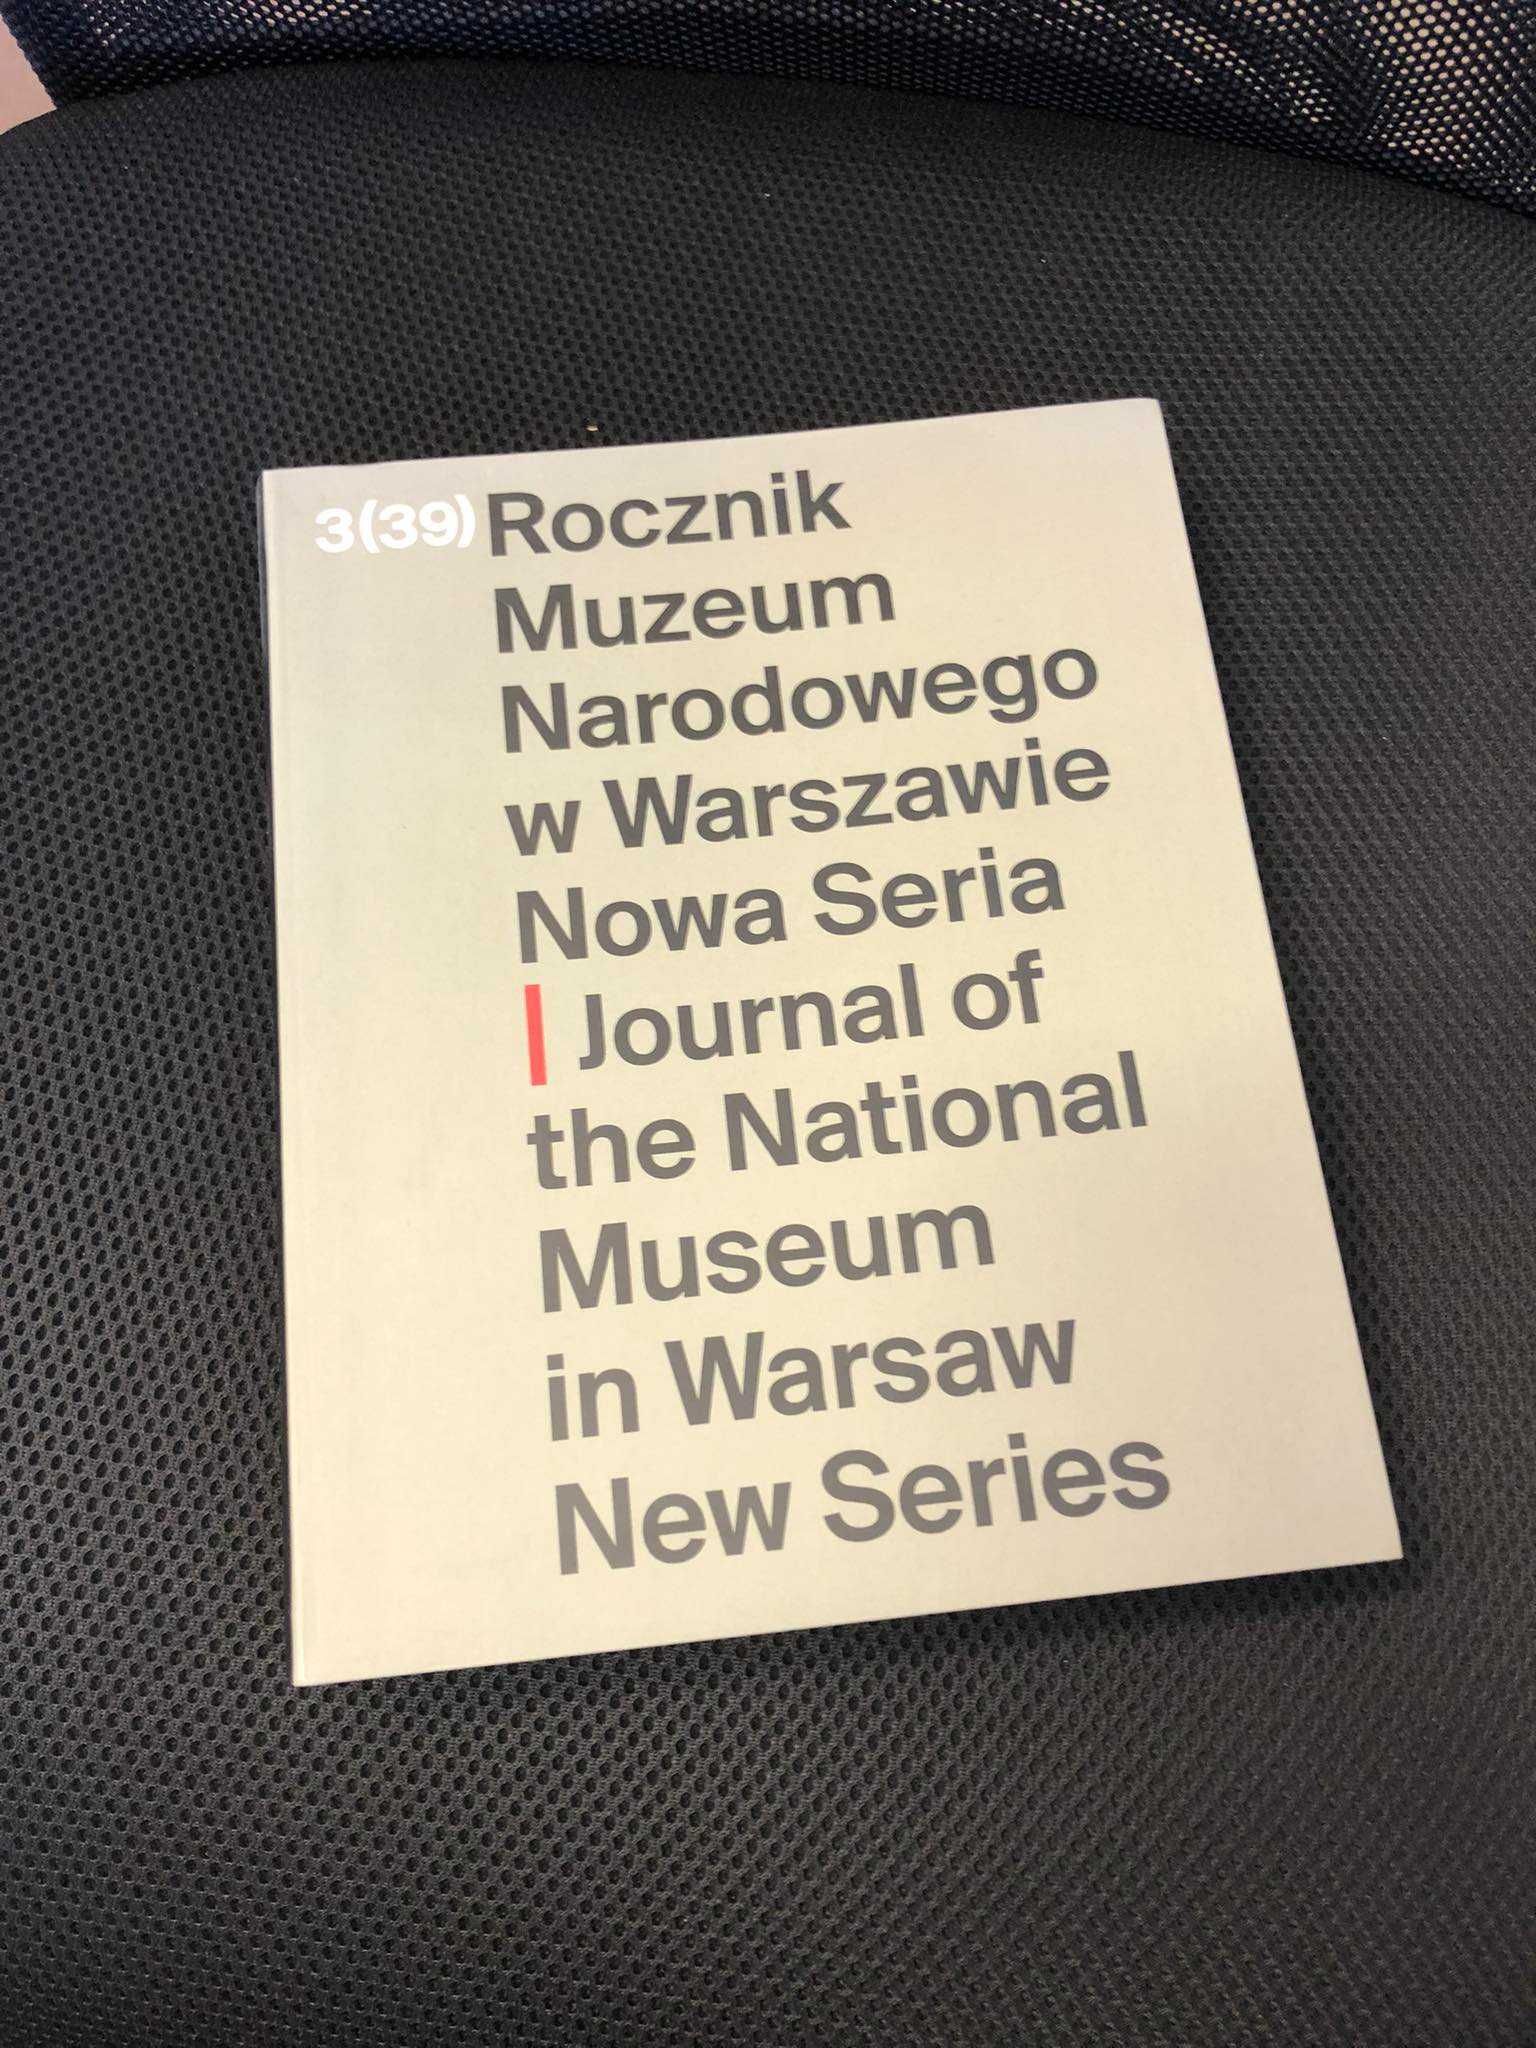 Rocznik Muzeum Narodowego w Warszawie. Nowa Seria 3(39)